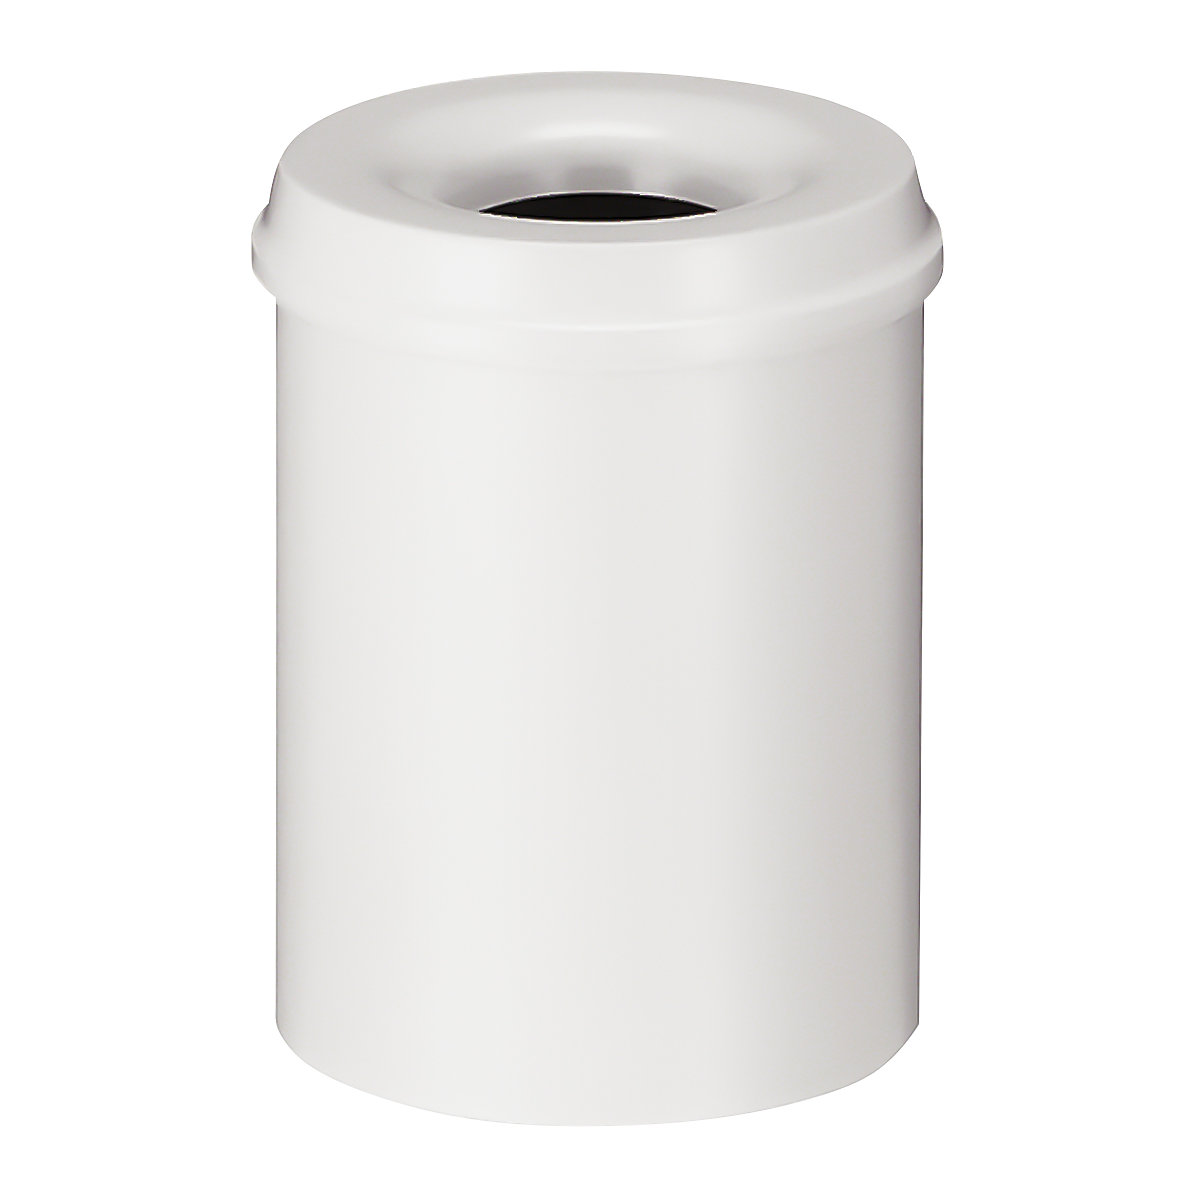 Corbeille à papier auto-extinguible, capacité 15 l, h x Ø 360 x 255 mm, corps blanc / étouffoir blanc